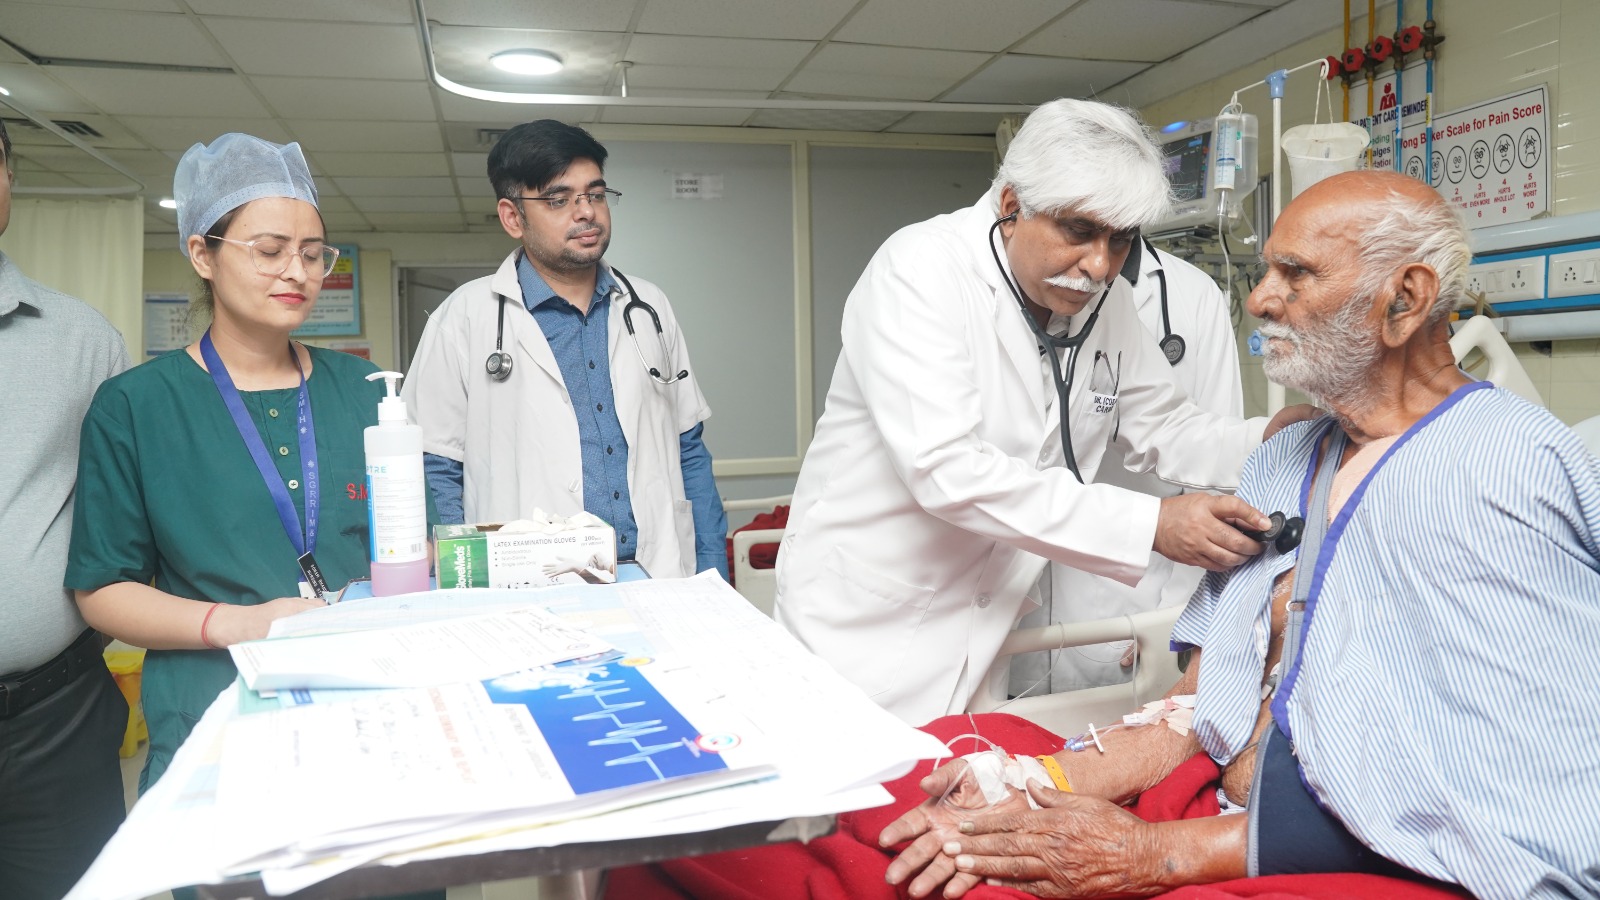 श्री महंत इन्दिरेश अस्पताल के कार्डियोलॉजी विभाग में विभिन्न राज्यों से मरीज़ बेहतर इलाज हेतु पहुंच रहे हैं